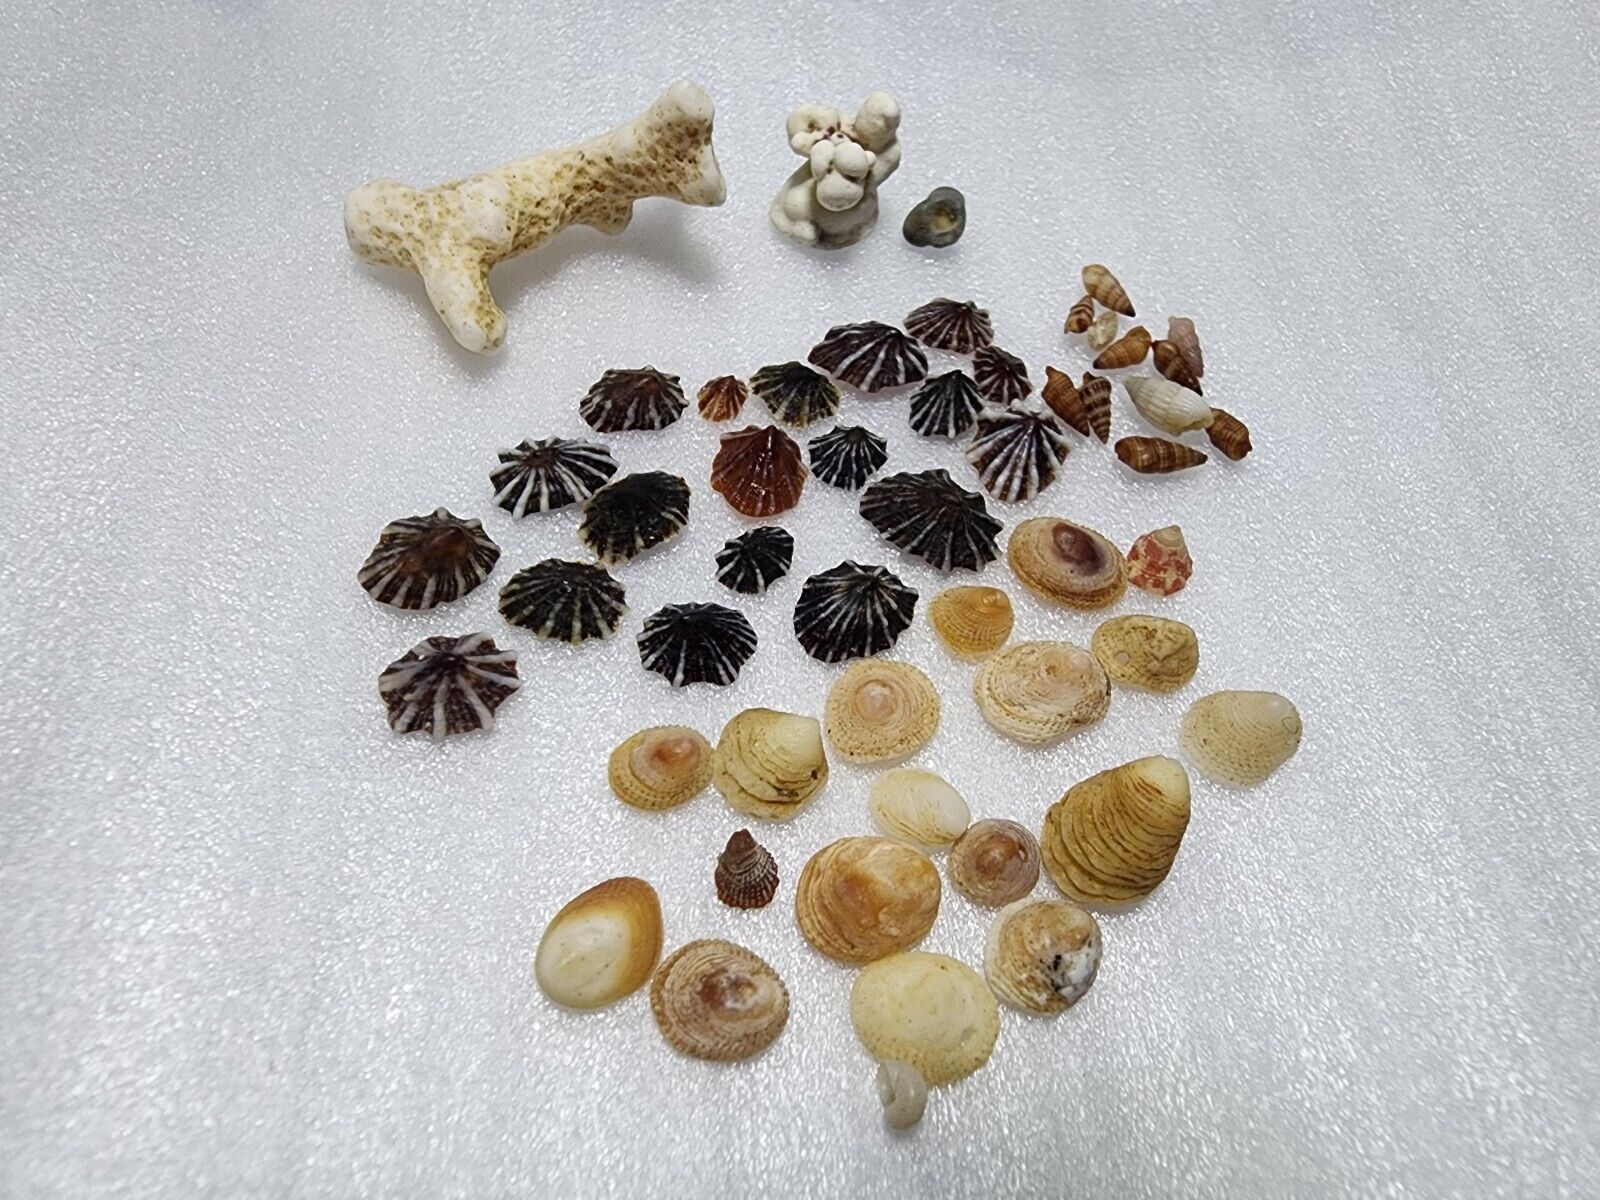 Beach Shells From Kauai Hawaii - A Little Island Getaway - No Mess